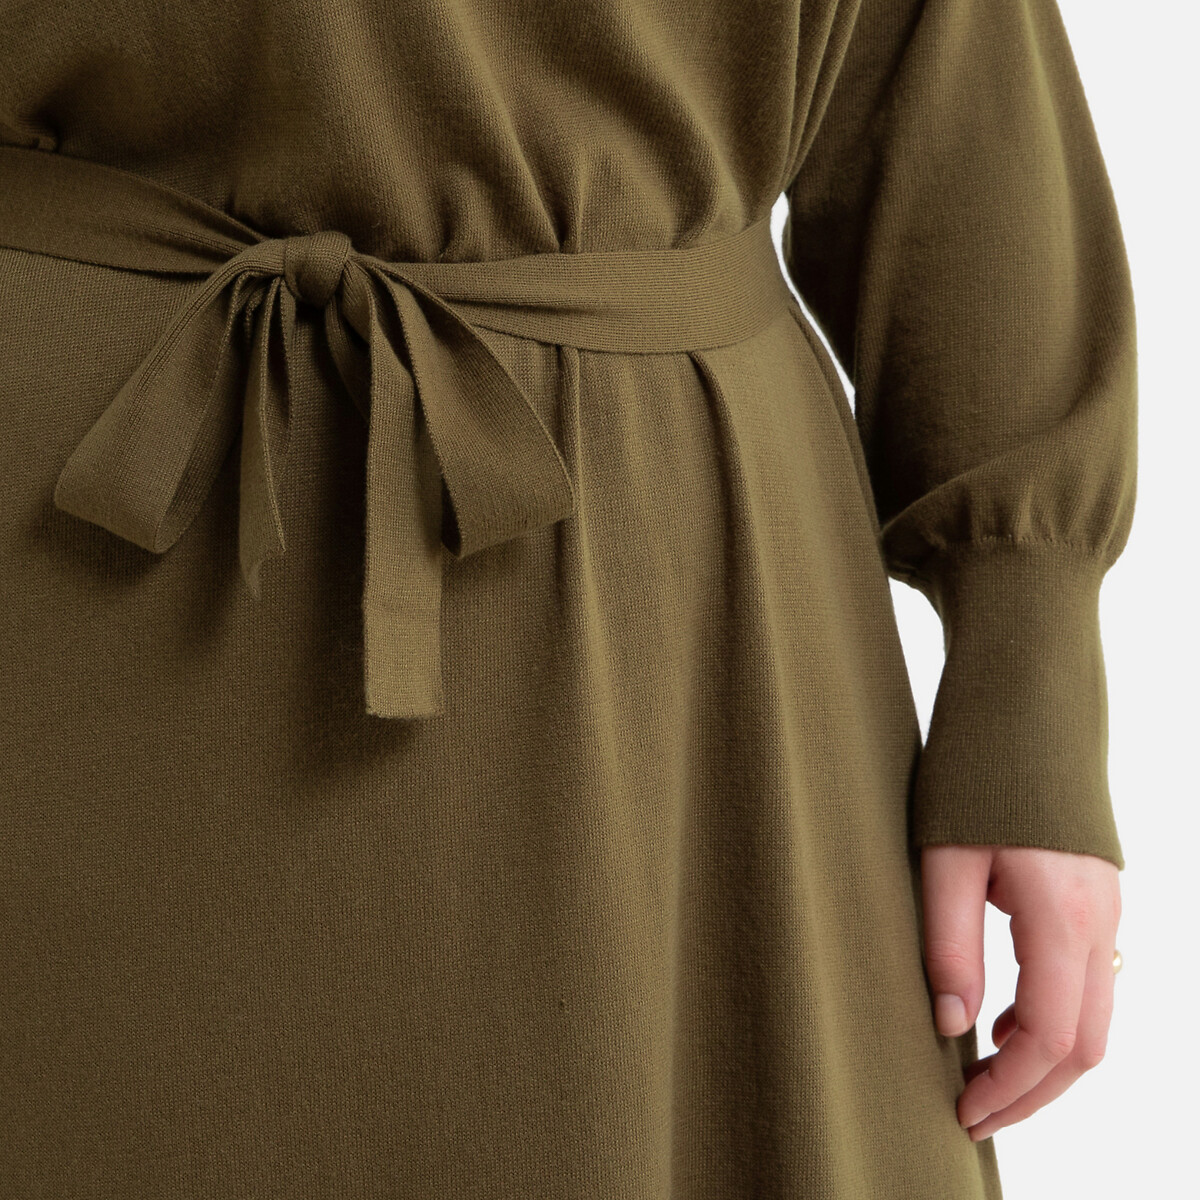 Платье-пуловер La Redoute С V-образным вырезом короткое с ремешком 50 (FR) - 56 (RUS) зеленый, размер 50 (FR) - 56 (RUS) С V-образным вырезом короткое с ремешком 50 (FR) - 56 (RUS) зеленый - фото 3